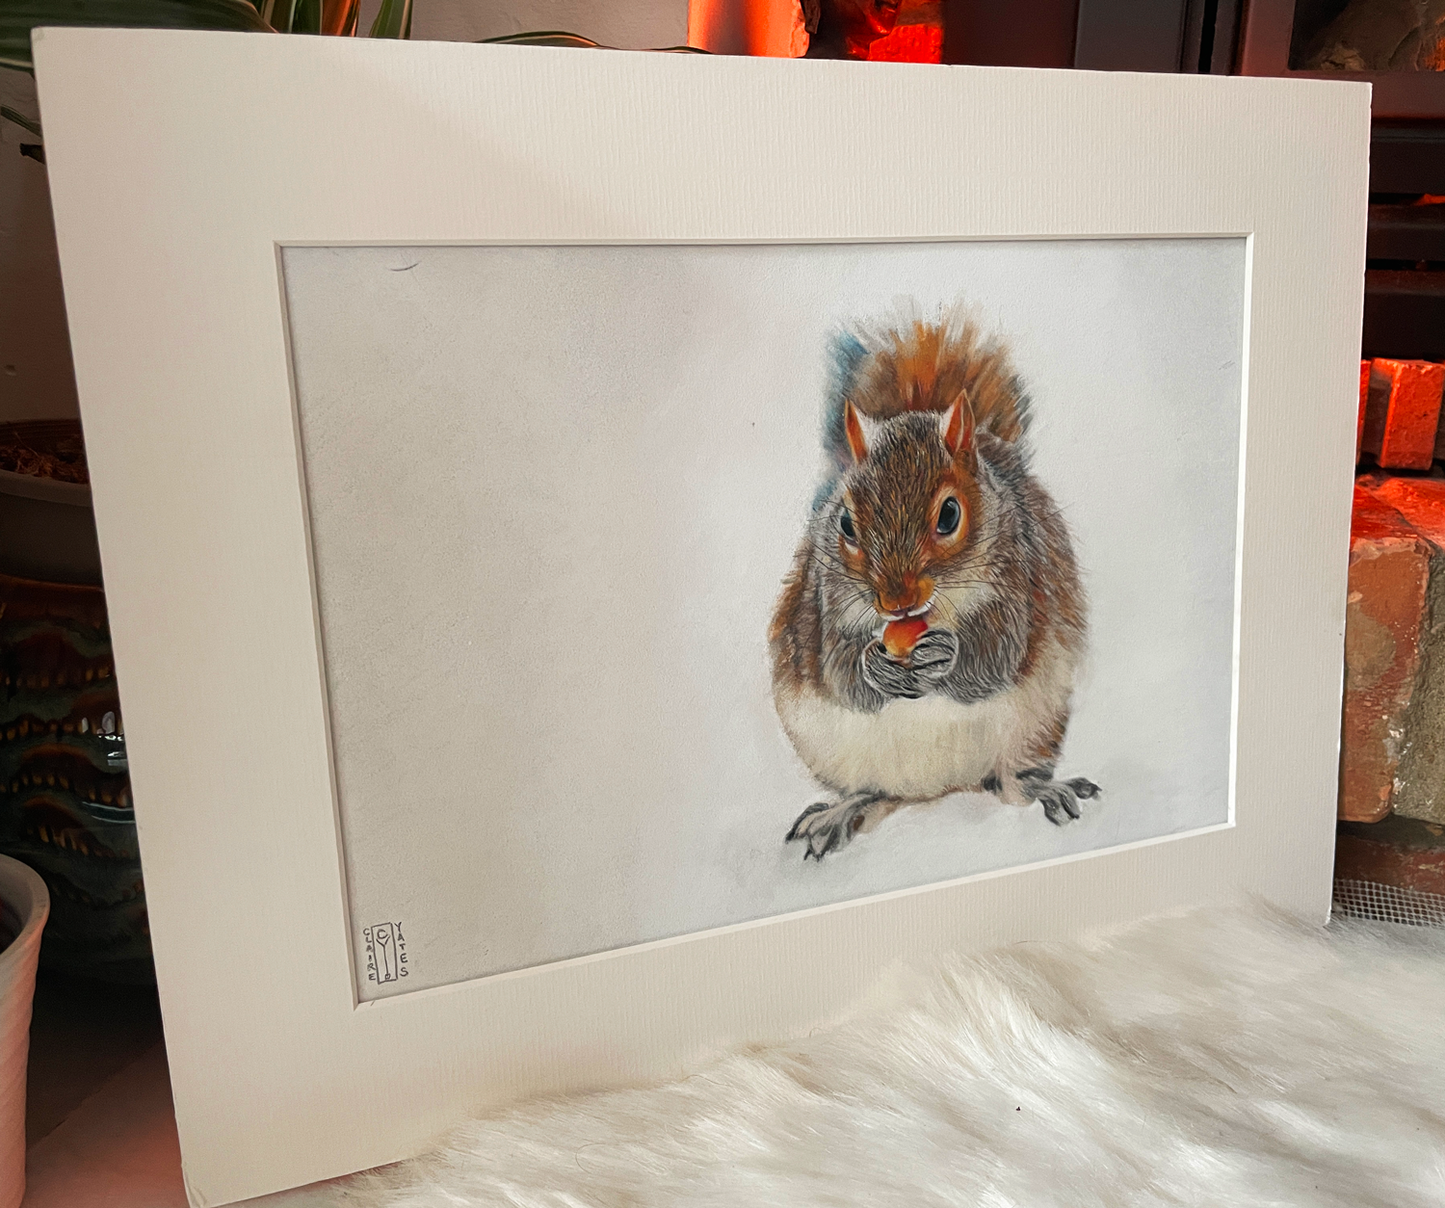 Original Winter Squirrel Portrait